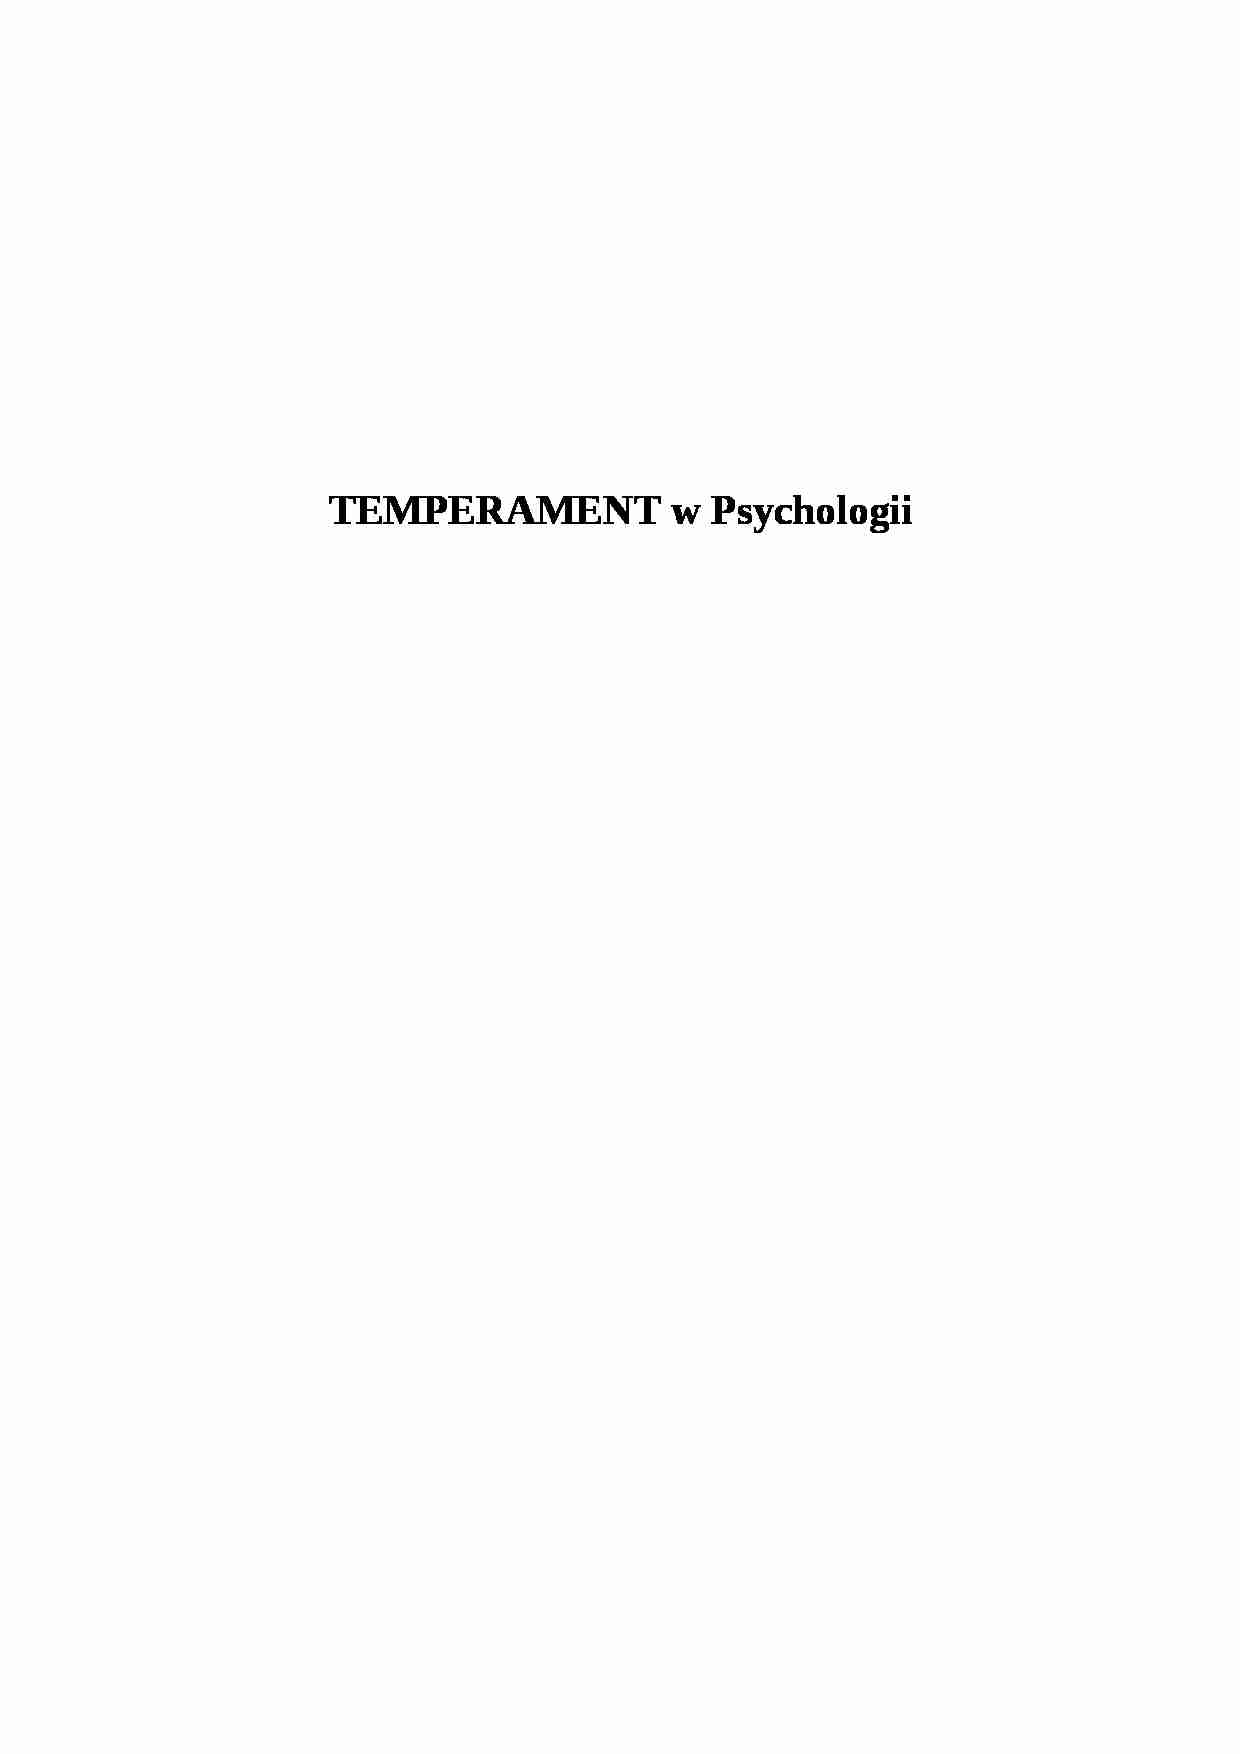 Temperament w Psychologii - opracowanie  - strona 1